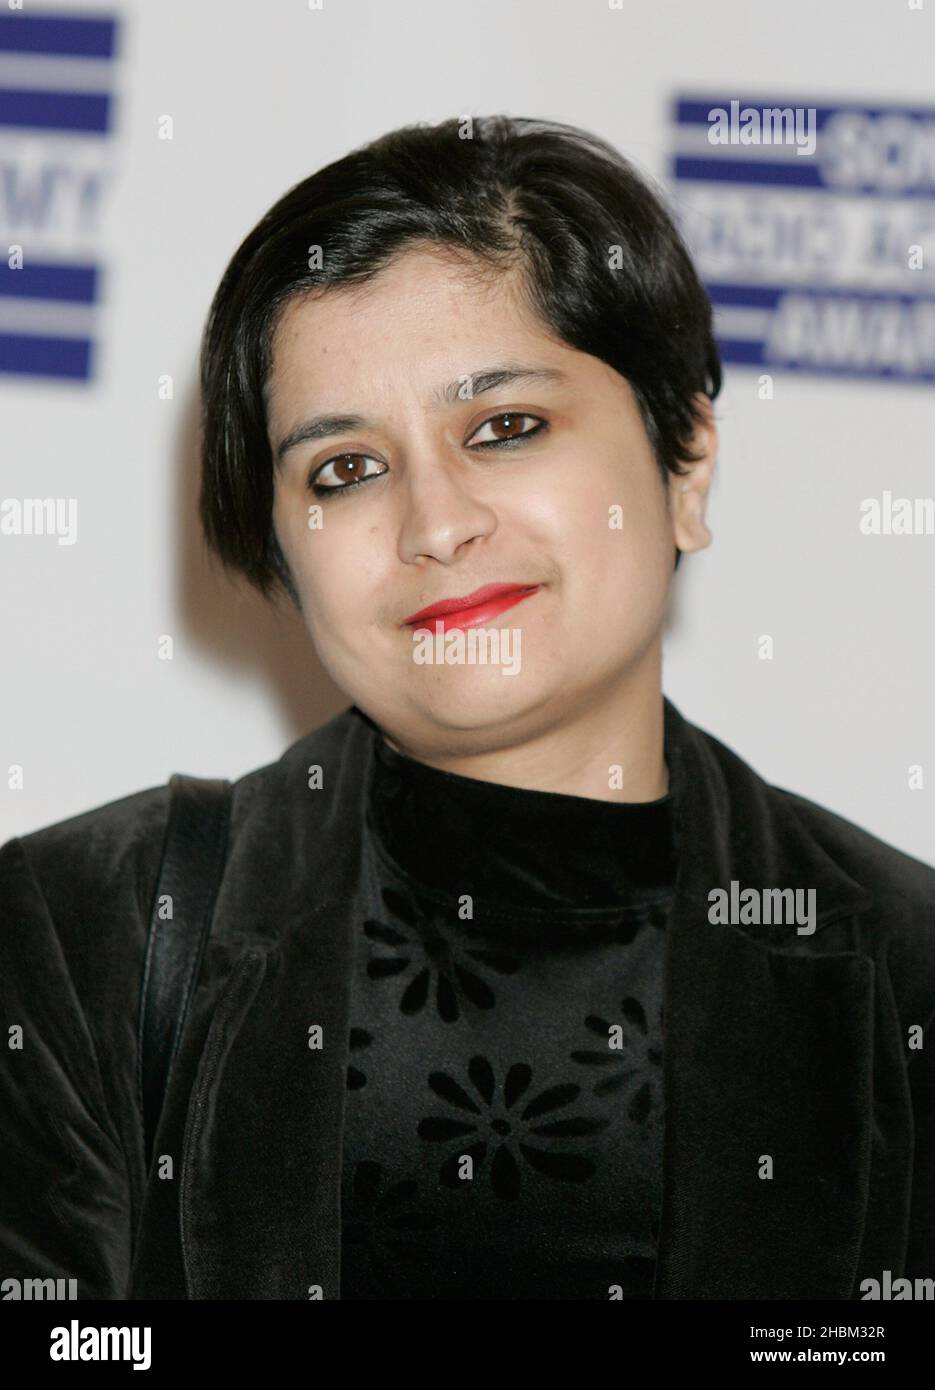 Shami Chakrabarti arrives at the Sony Radio Awards at the Grosvenor House Hotel on May 10,2010. Stock Photo